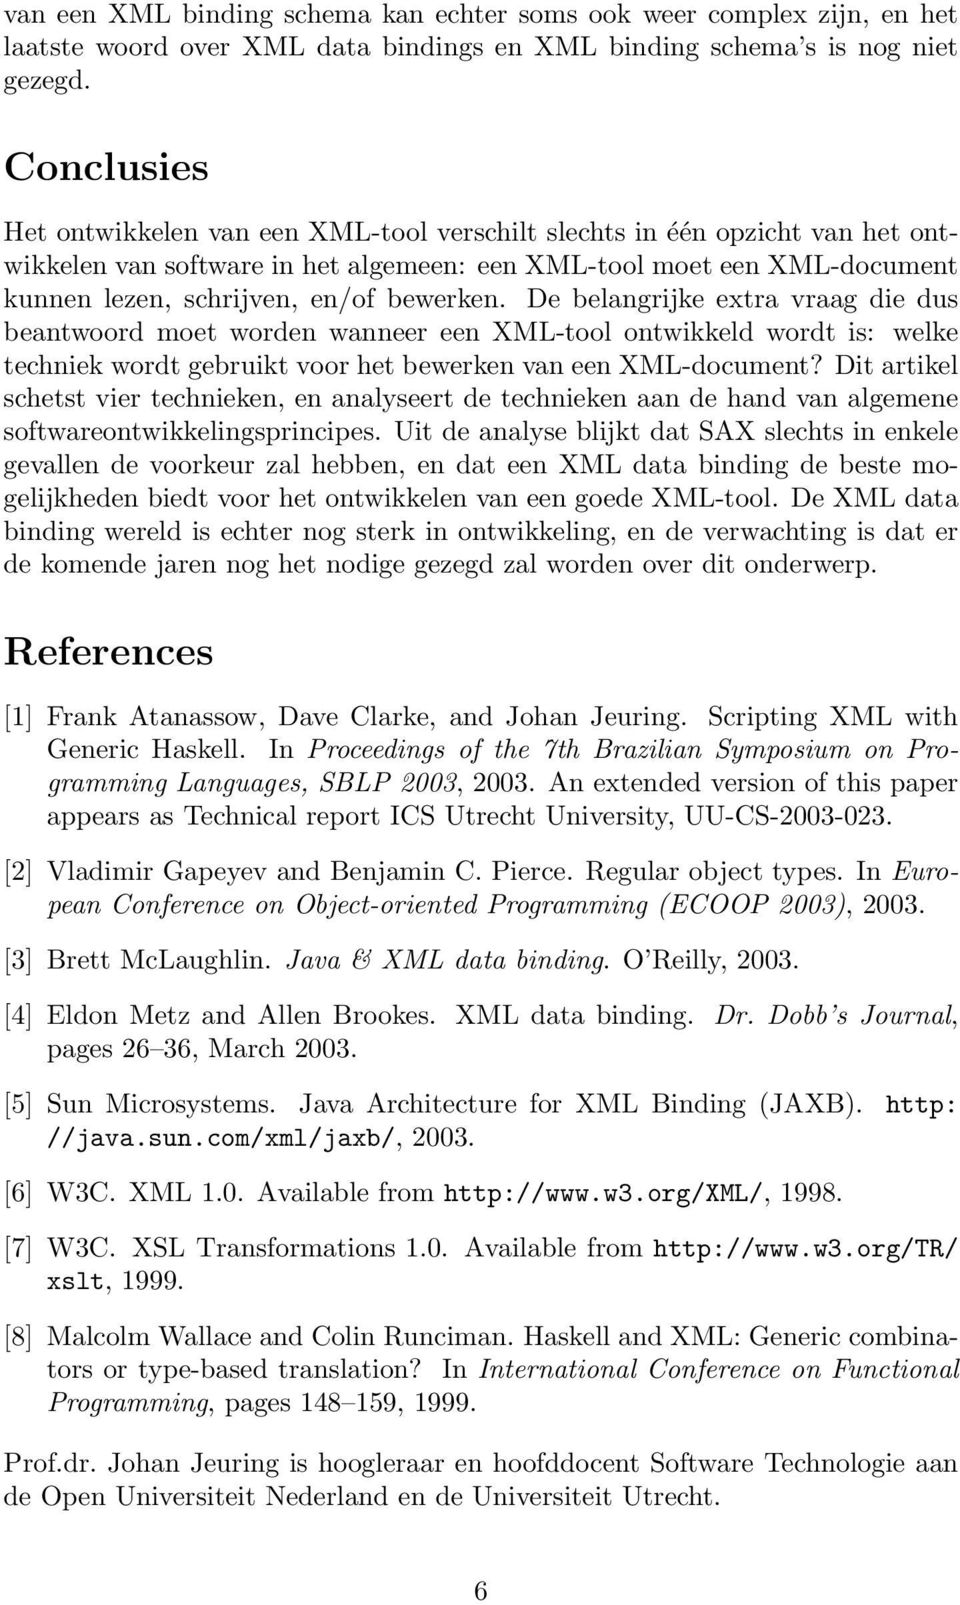 bewerken. De belangrijke extra vraag die dus beantwoord moet worden wanneer een XML-tool ontwikkeld wordt is: welke techniek wordt gebruikt voor het bewerken van een XML-document?